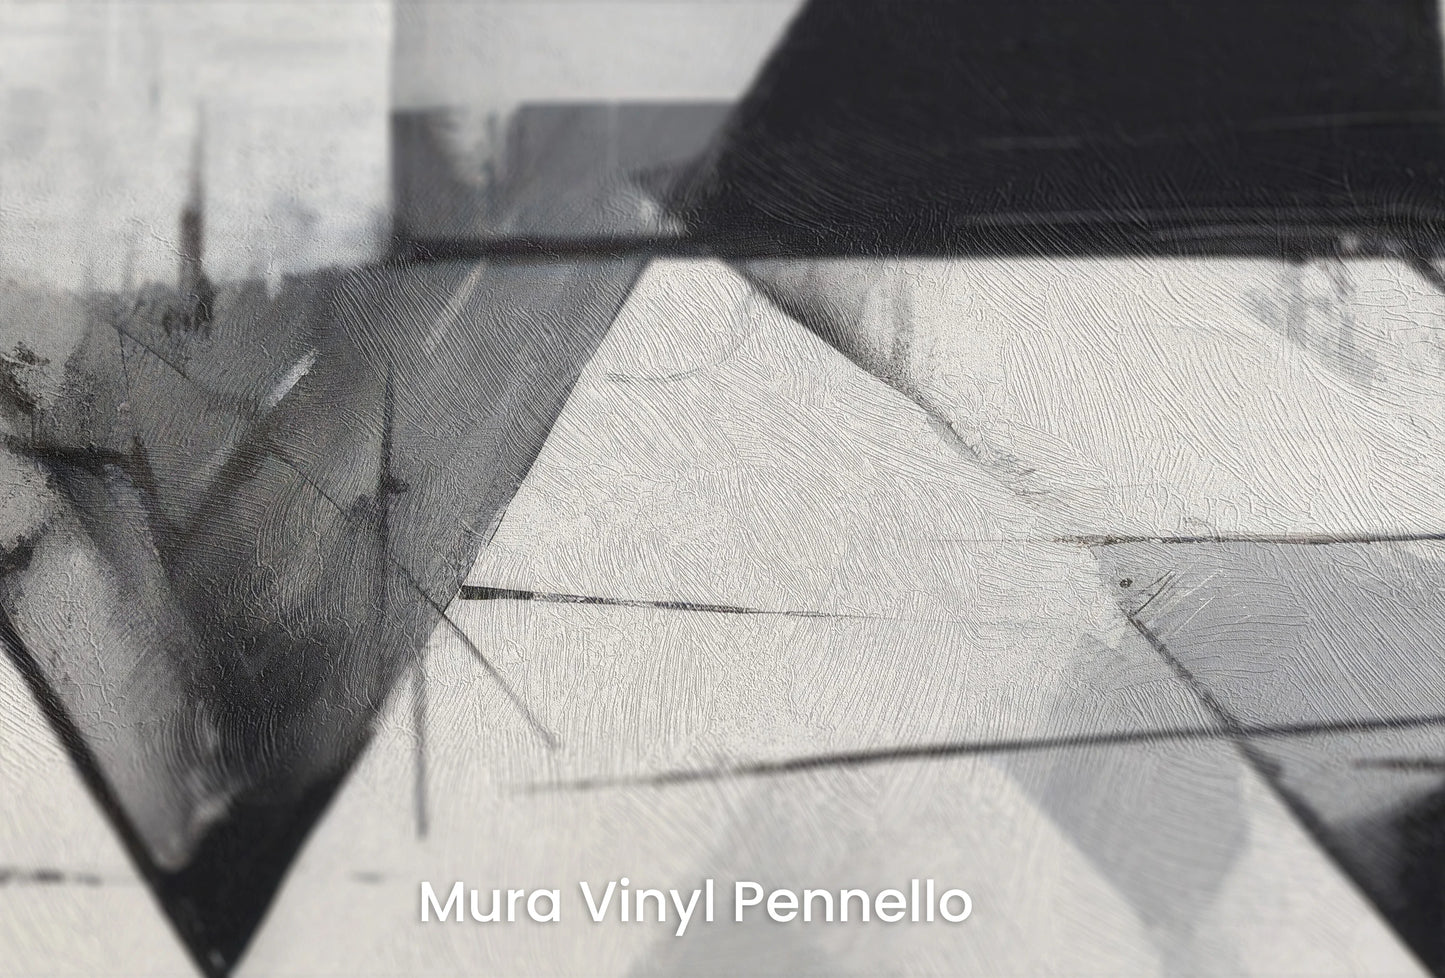 Zbliżenie na artystyczną fototapetę o nazwie Angular Dynamics na podłożu Mura Vinyl Pennello - faktura pociągnięć pędzla malarskiego.